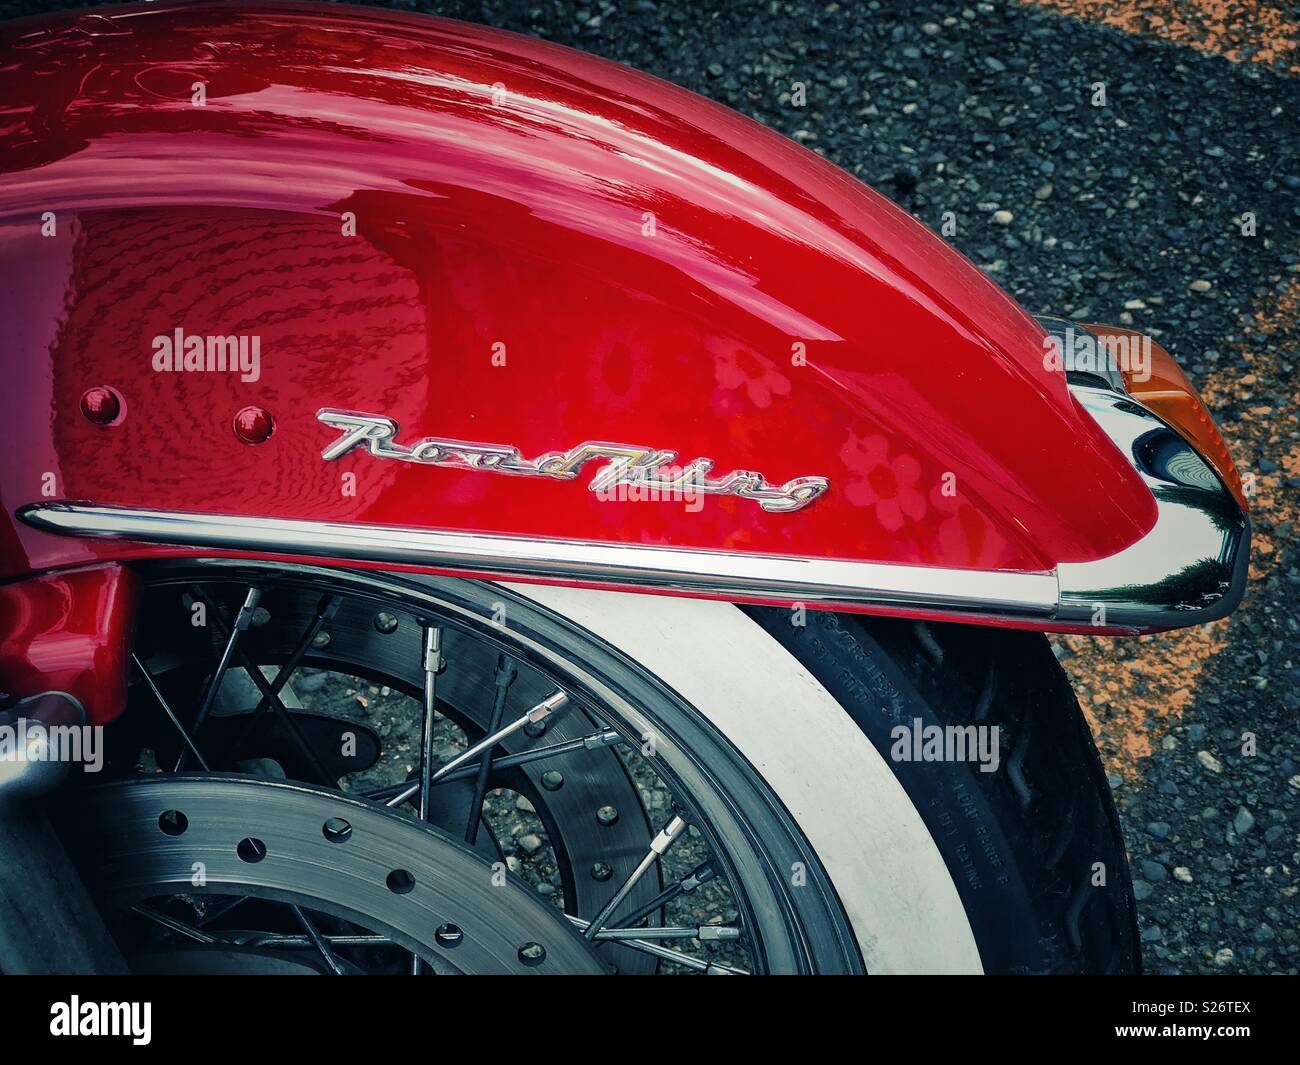 Rosso brillante Road King coperchio di ruota di iconico Harley Davidson Moto Foto Stock